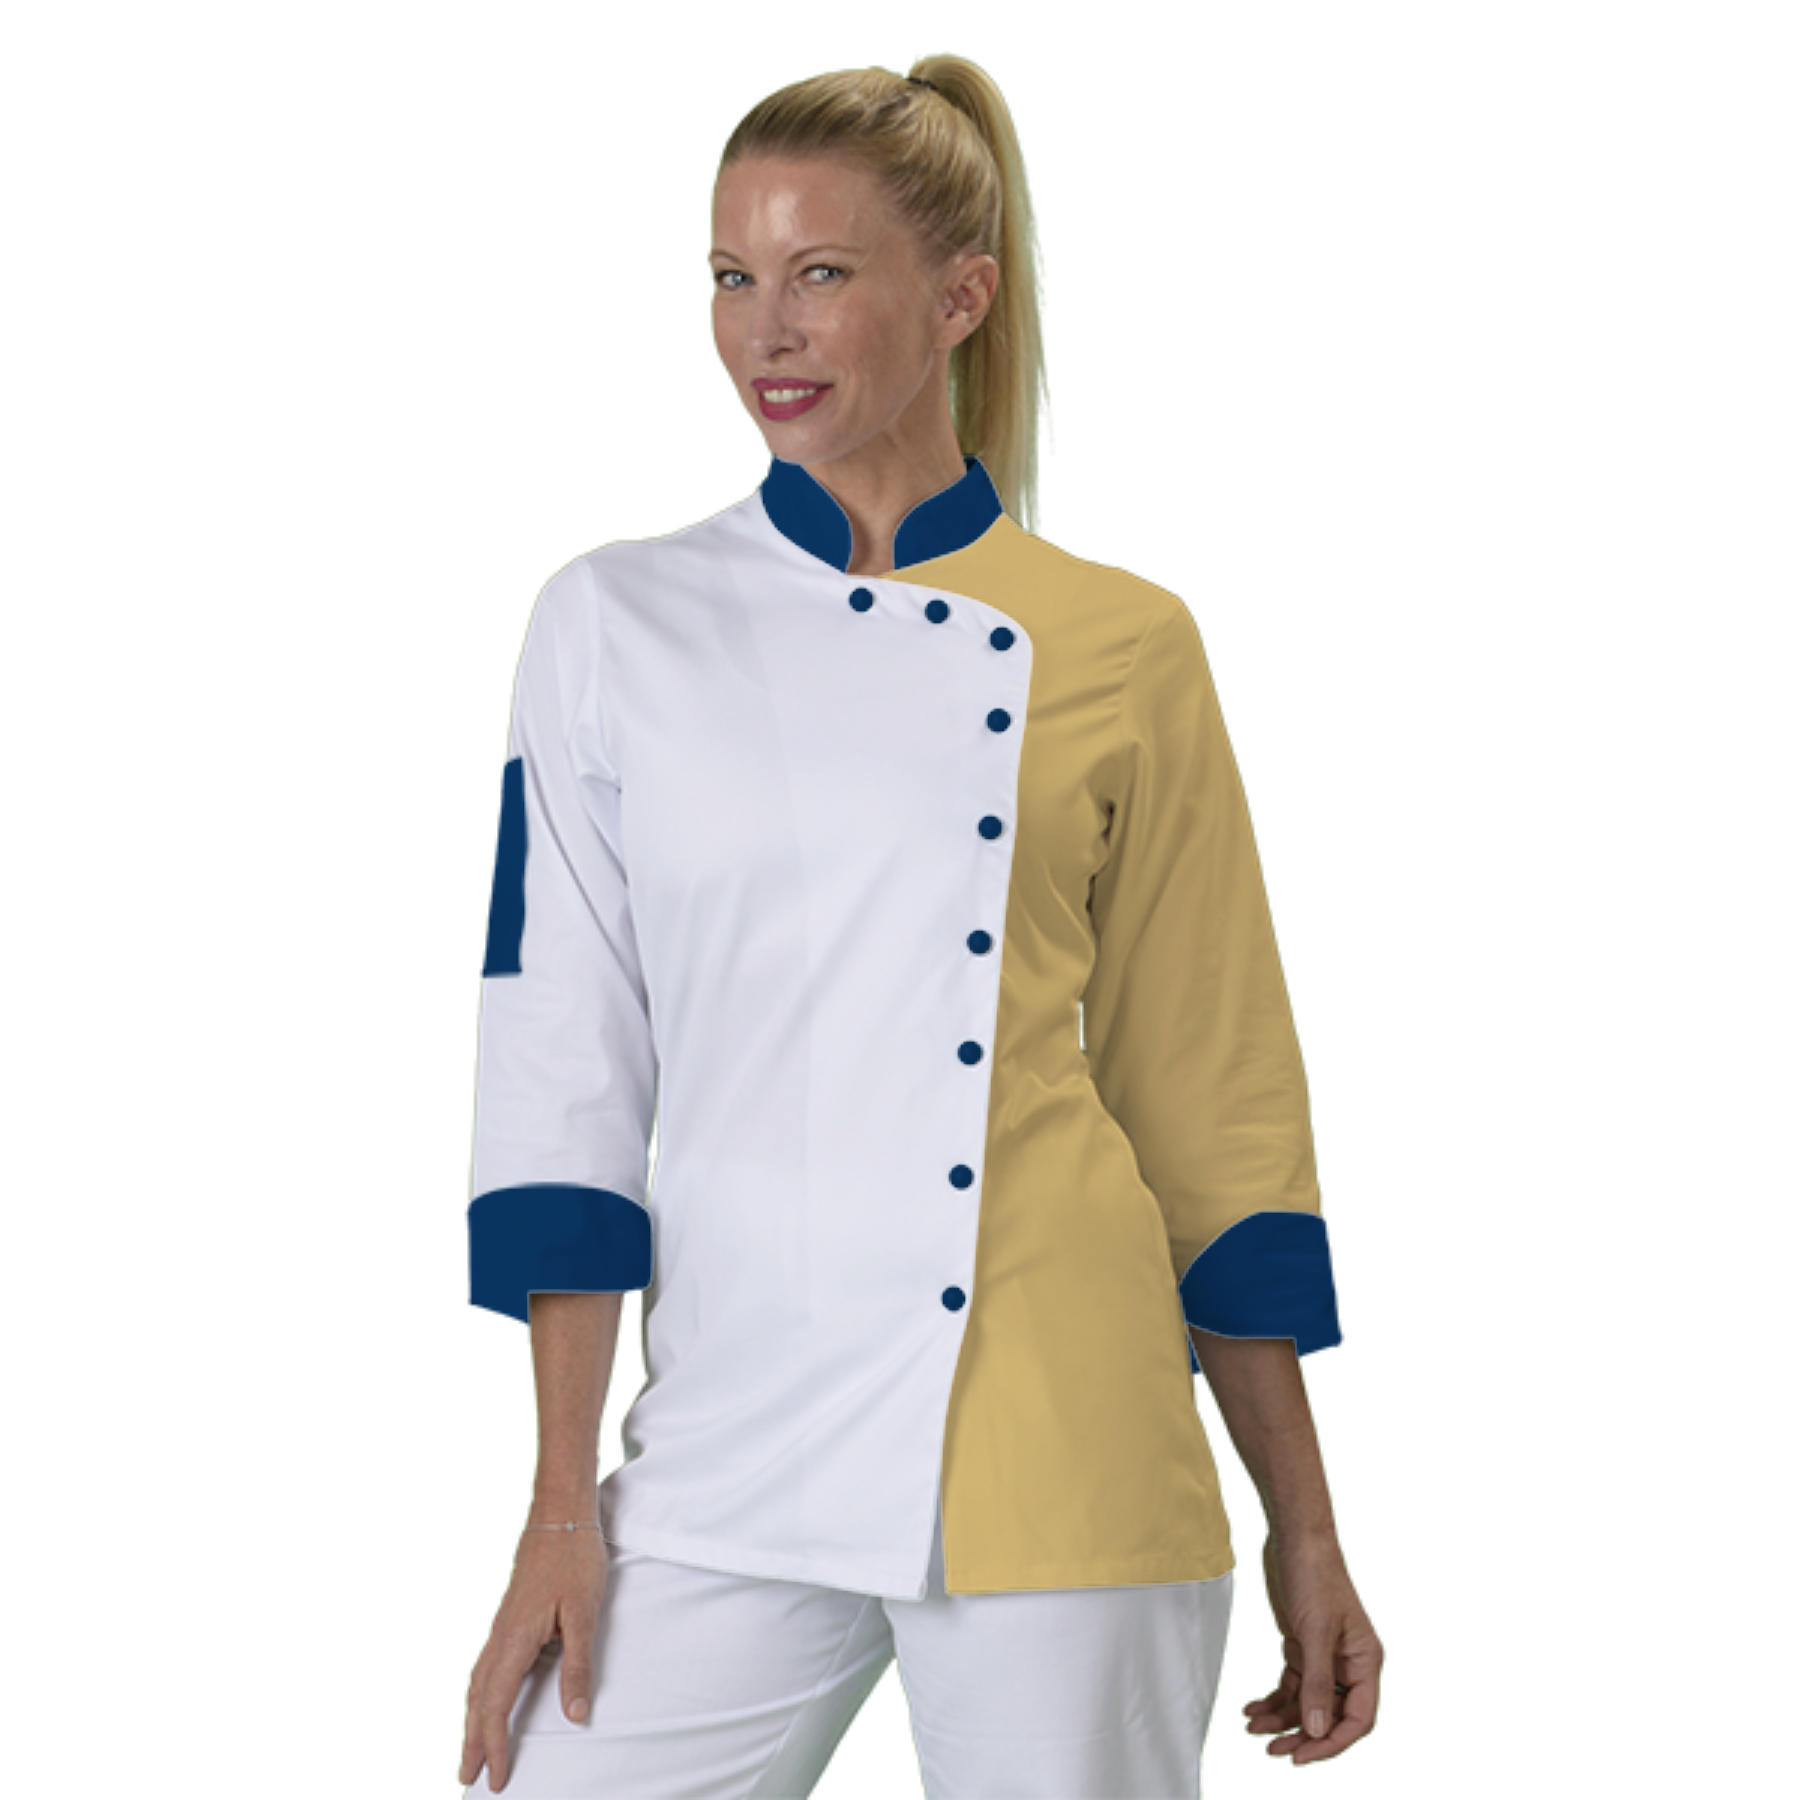 veste-de-cuisine-femme-a-personnaliser acheté - par Sylvie - le 29-02-2020